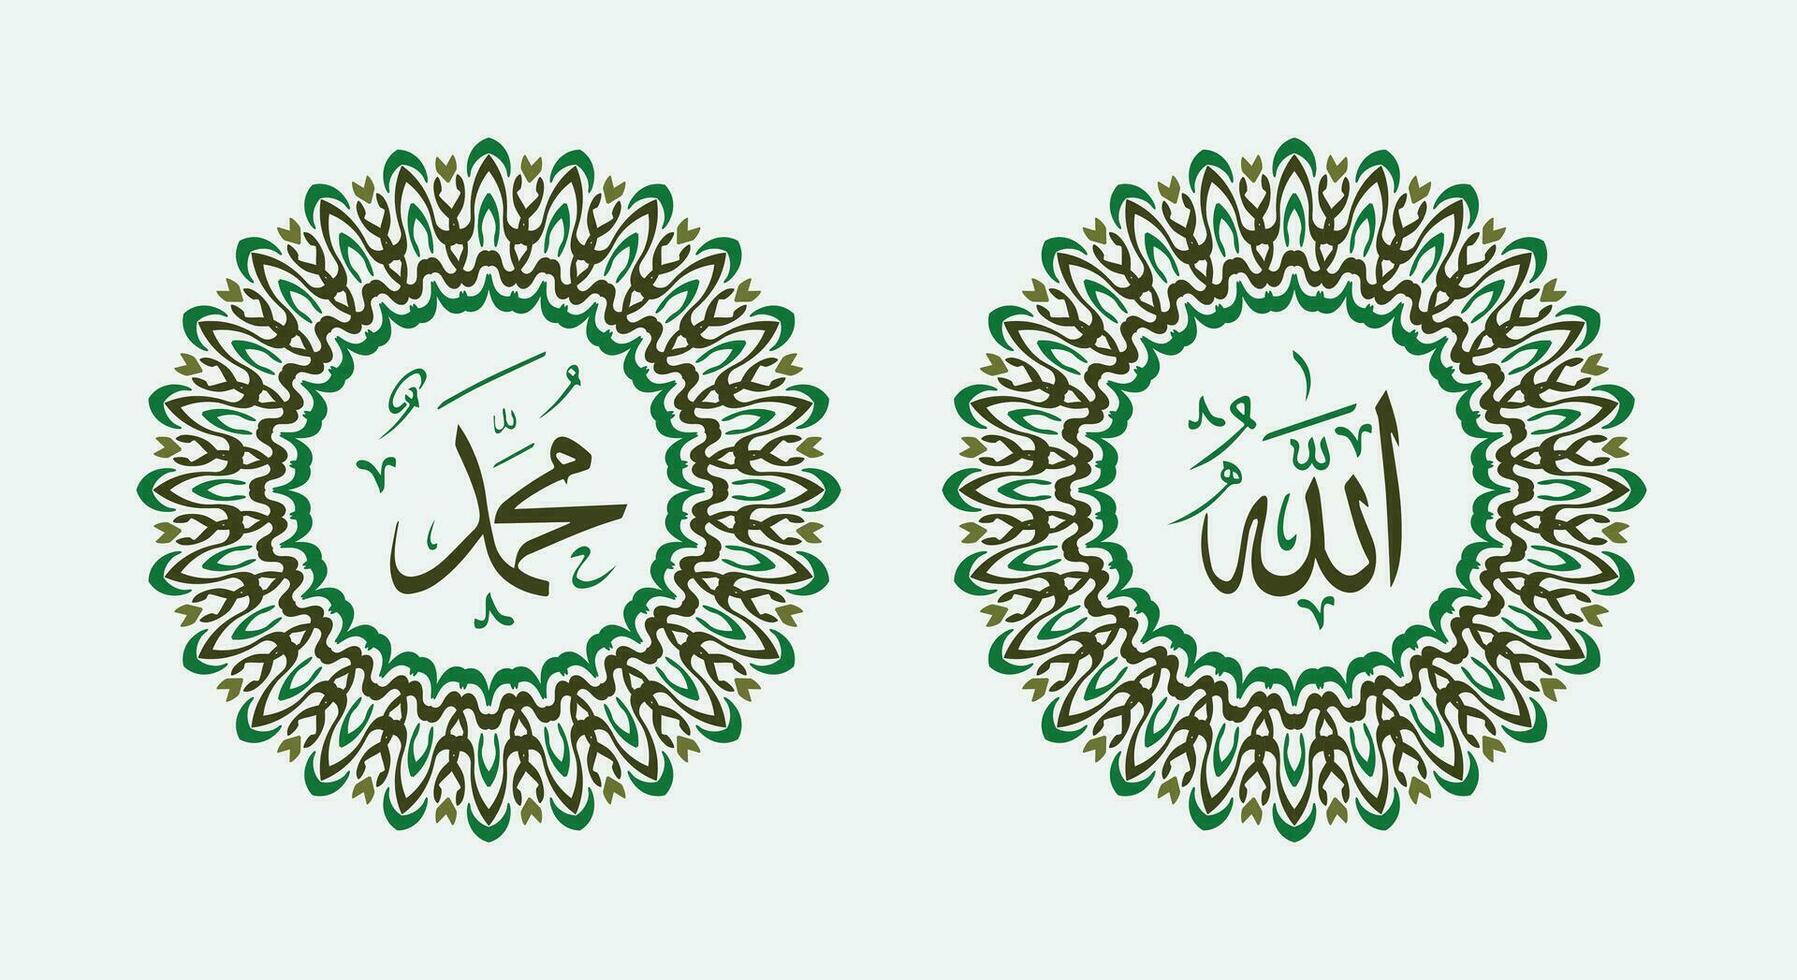 allah muhammad namn av allah muhammed, allah muhammad arabicum islamic kalligrafi konst, med traditionell ram och grön Färg vektor